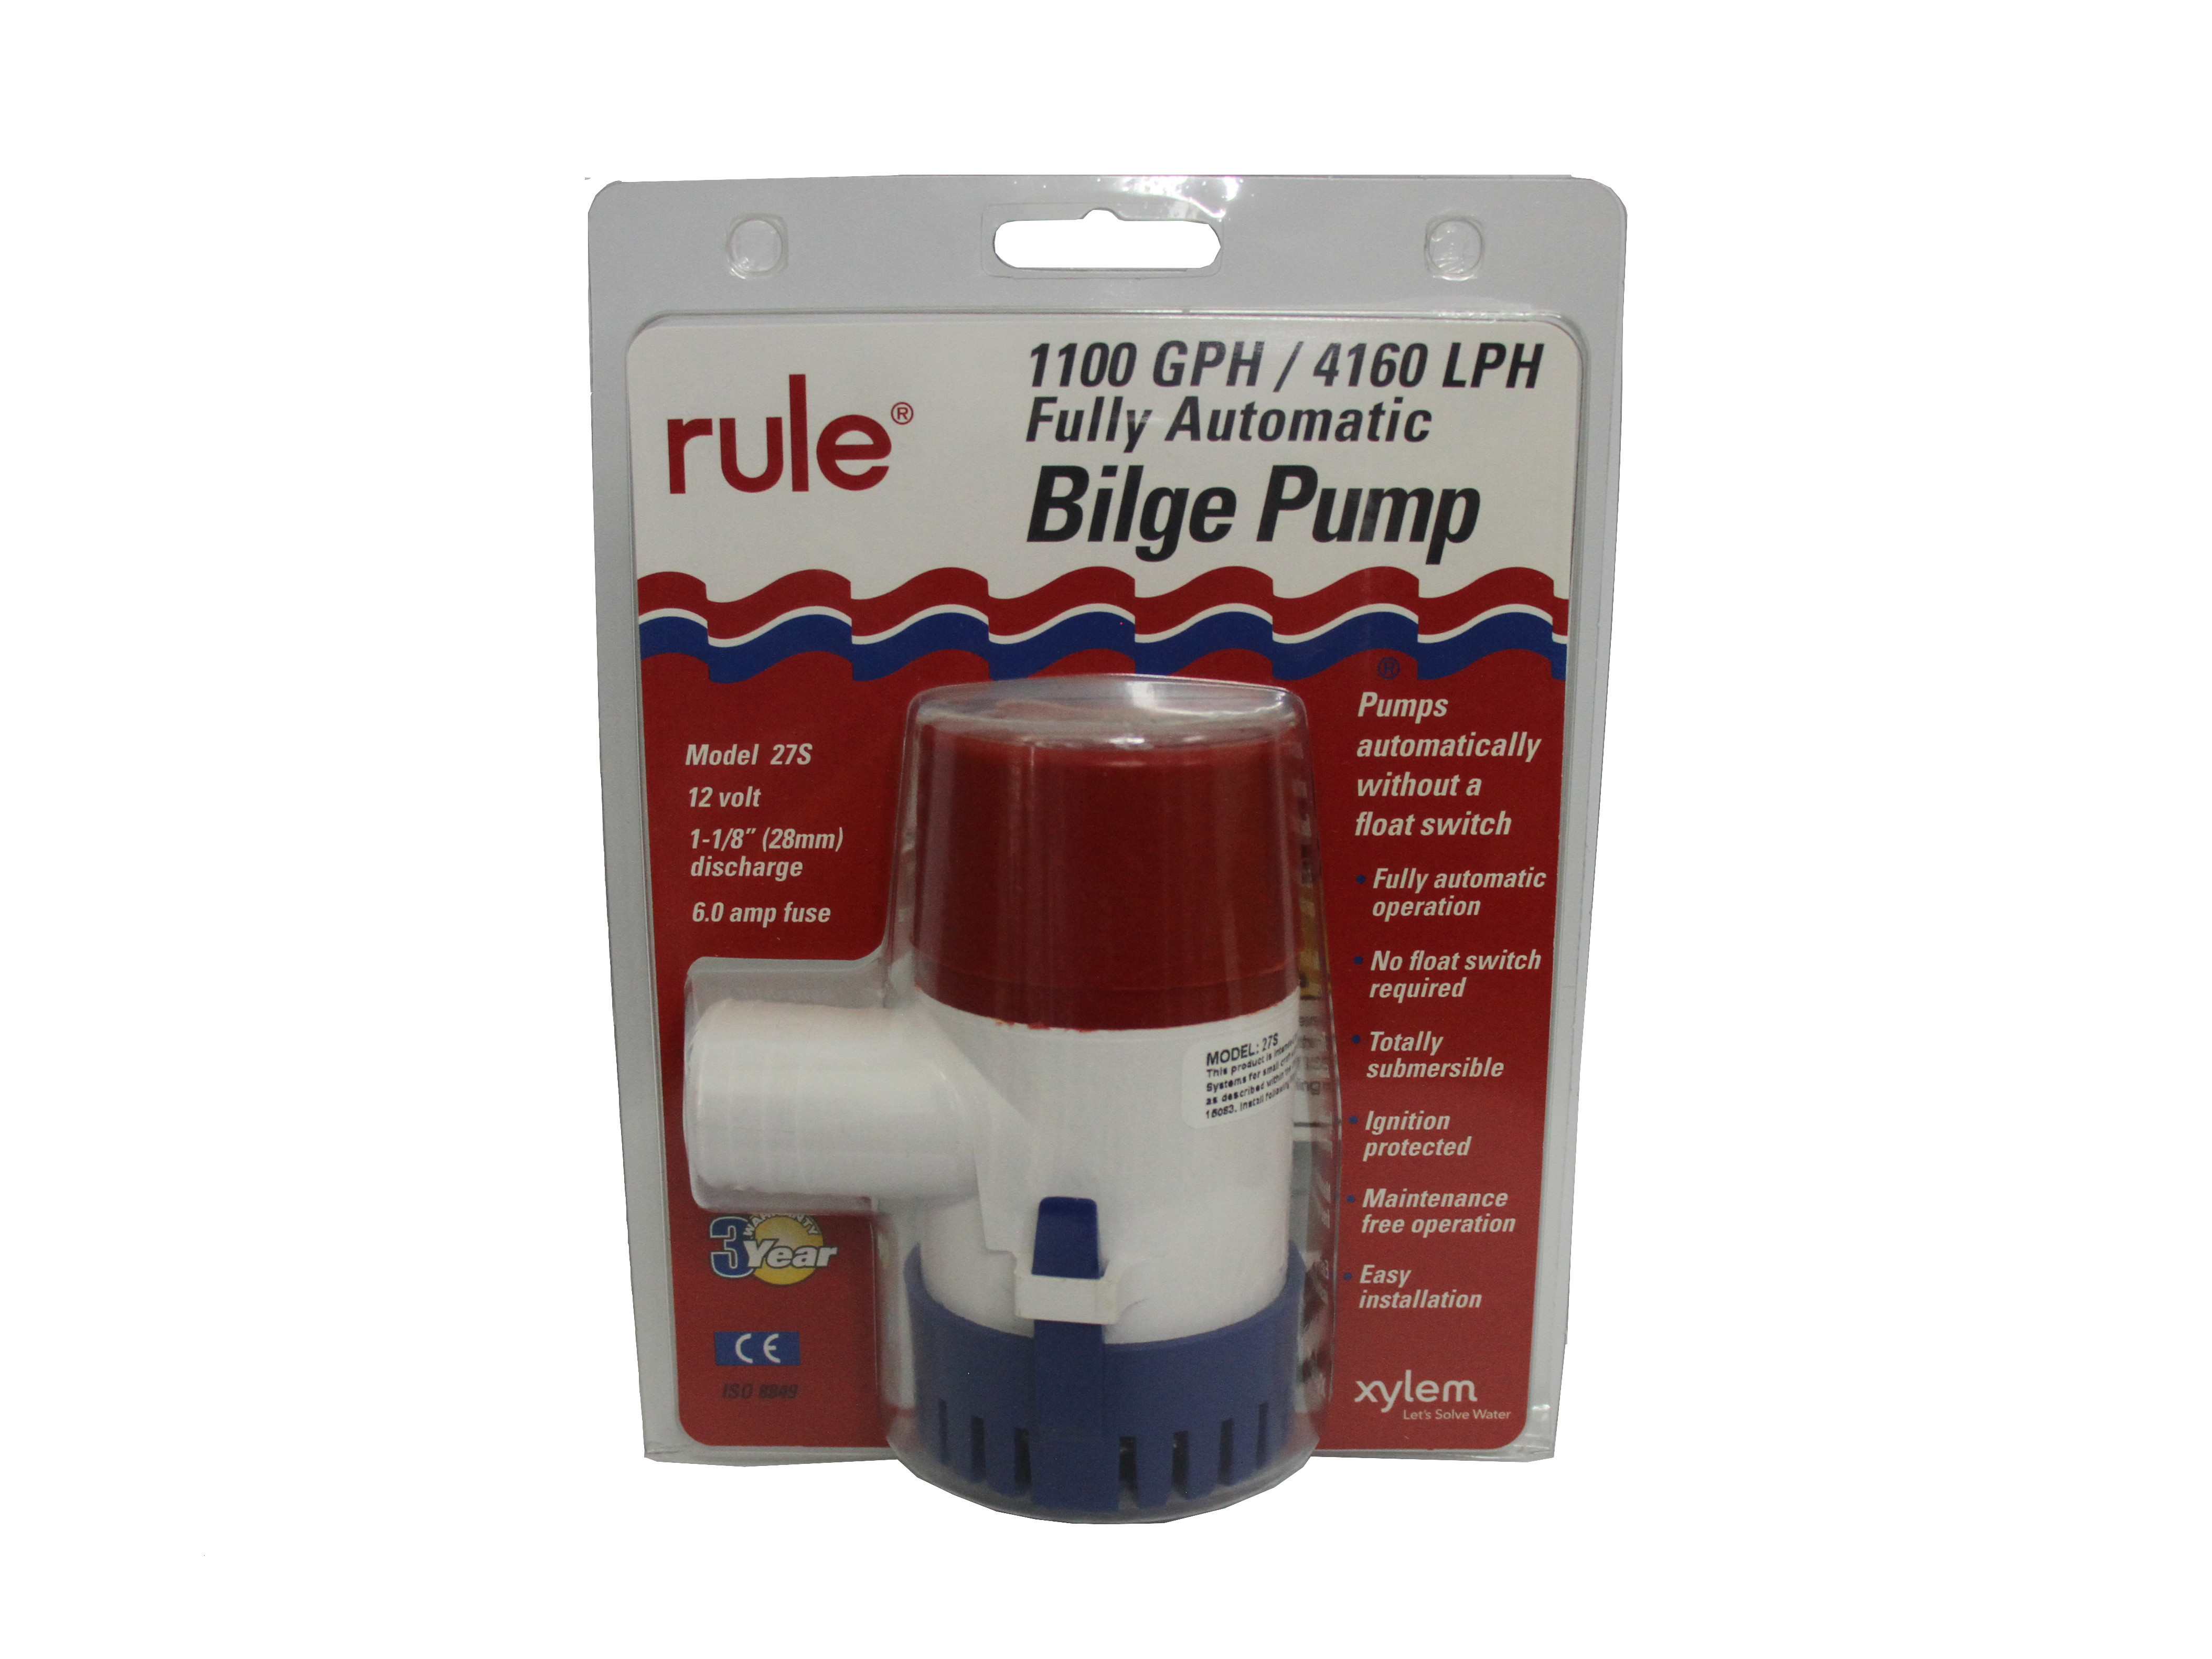 Rule 1100 gph Automatic Bilge Pump 12 volt